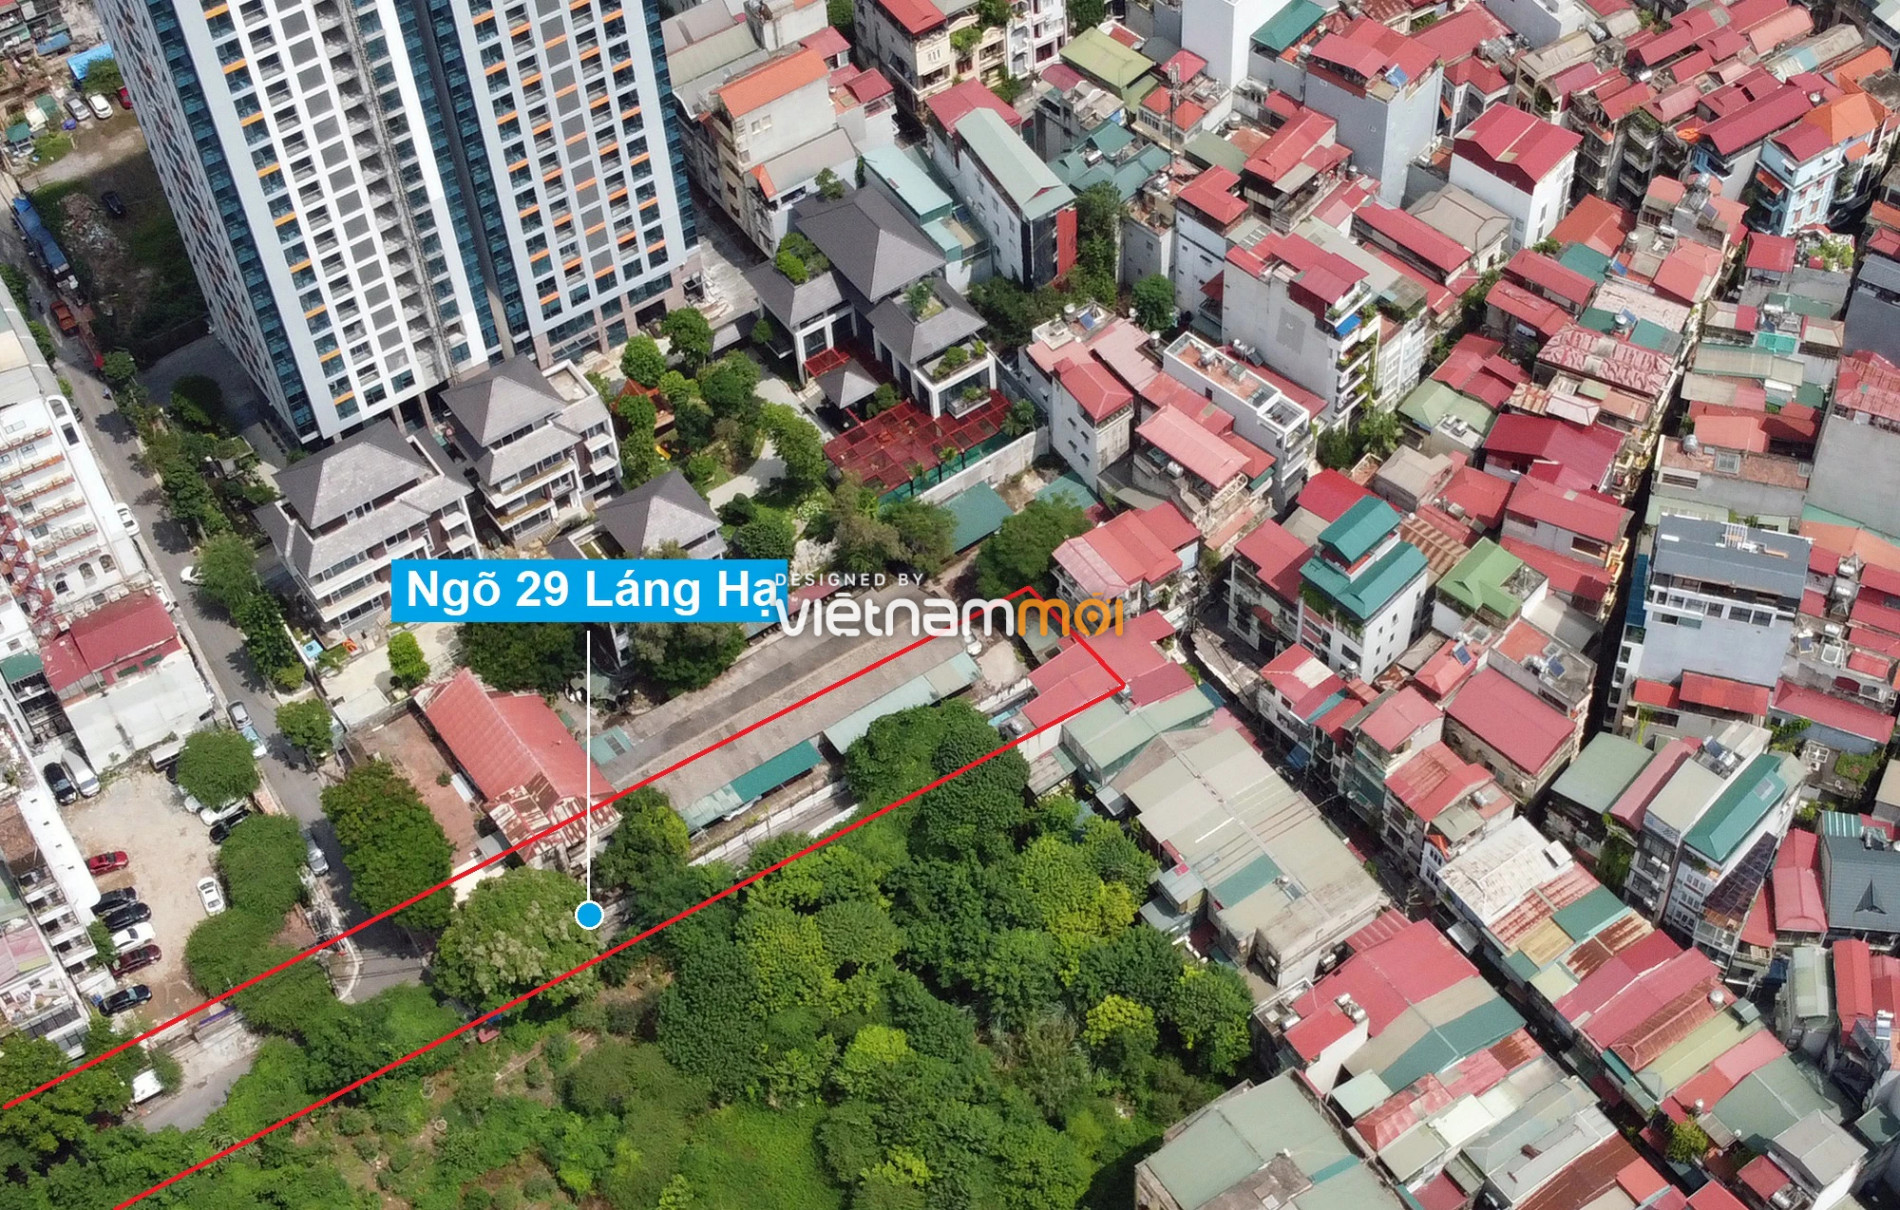 Những khu đất sắp thu hồi để mở đường ở quận Đống Đa, Hà Nội (phần 3) - Ảnh 11.